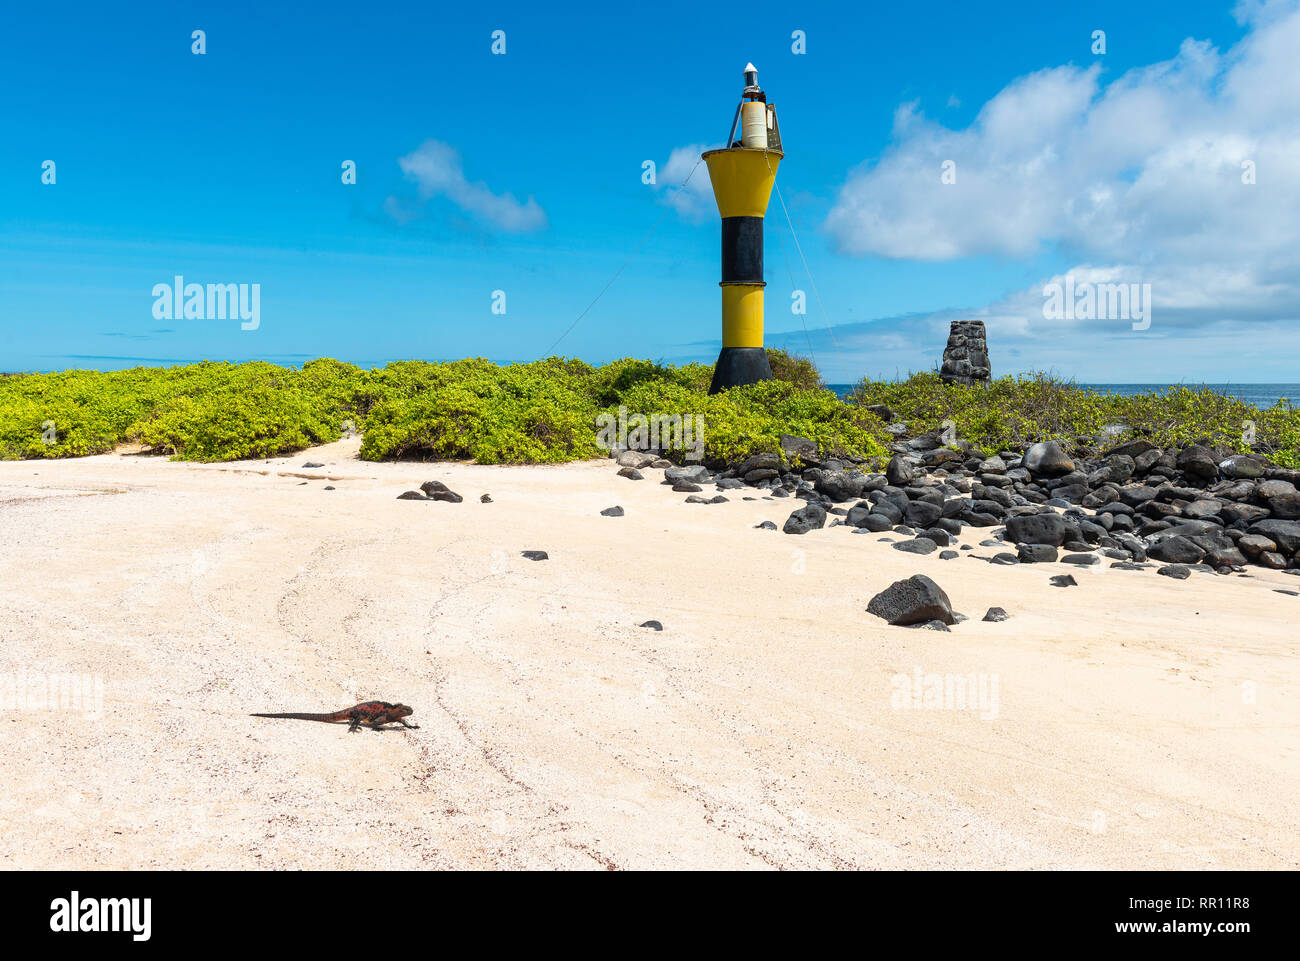 Espanola marine iguana (Amblyrhynchus cristatus) passeggiate all'oceano pacifico sulla spiaggia di Isola Espanola con il faro, Galapagos, Ecuador. Foto Stock